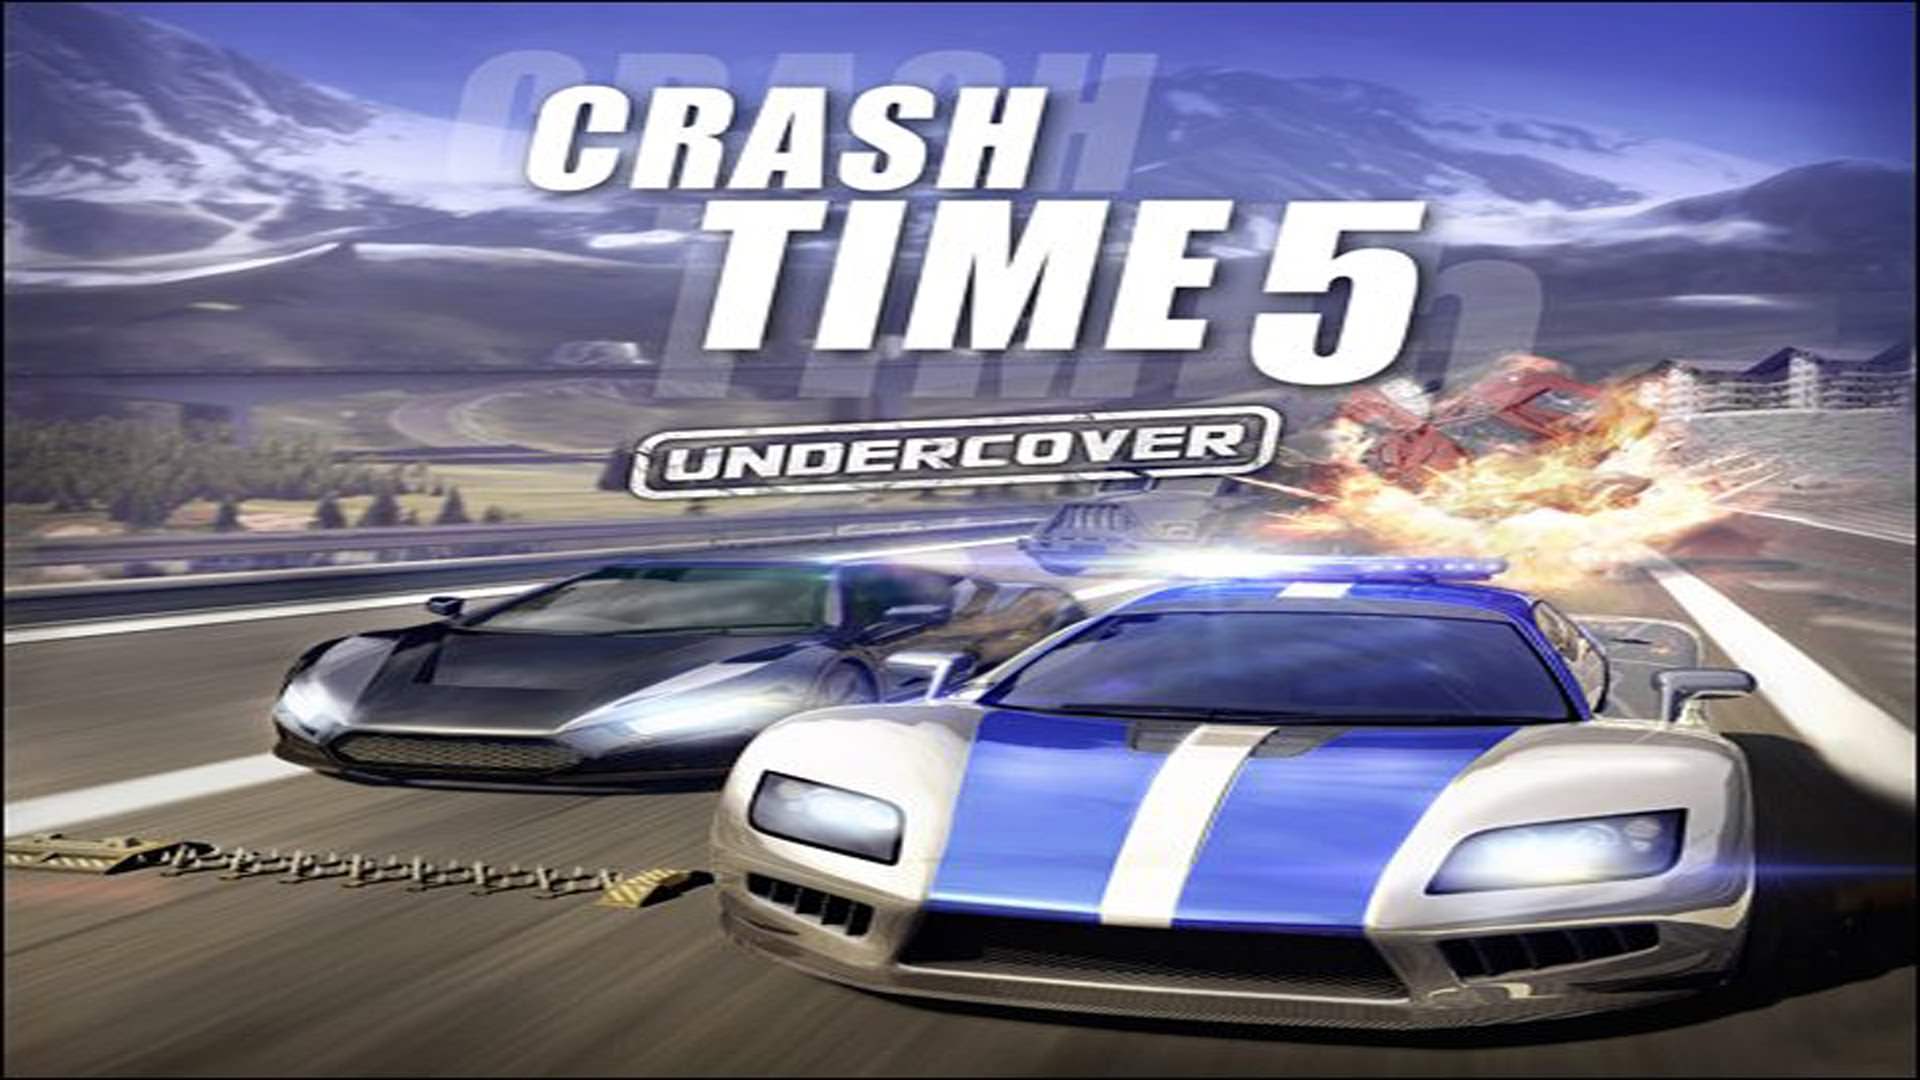 Crash time game. Краш тайм 5. Crash time 5 Undercover. Crash time 5 - Undercover (2012). Crash time 5 Undercover 2012г.